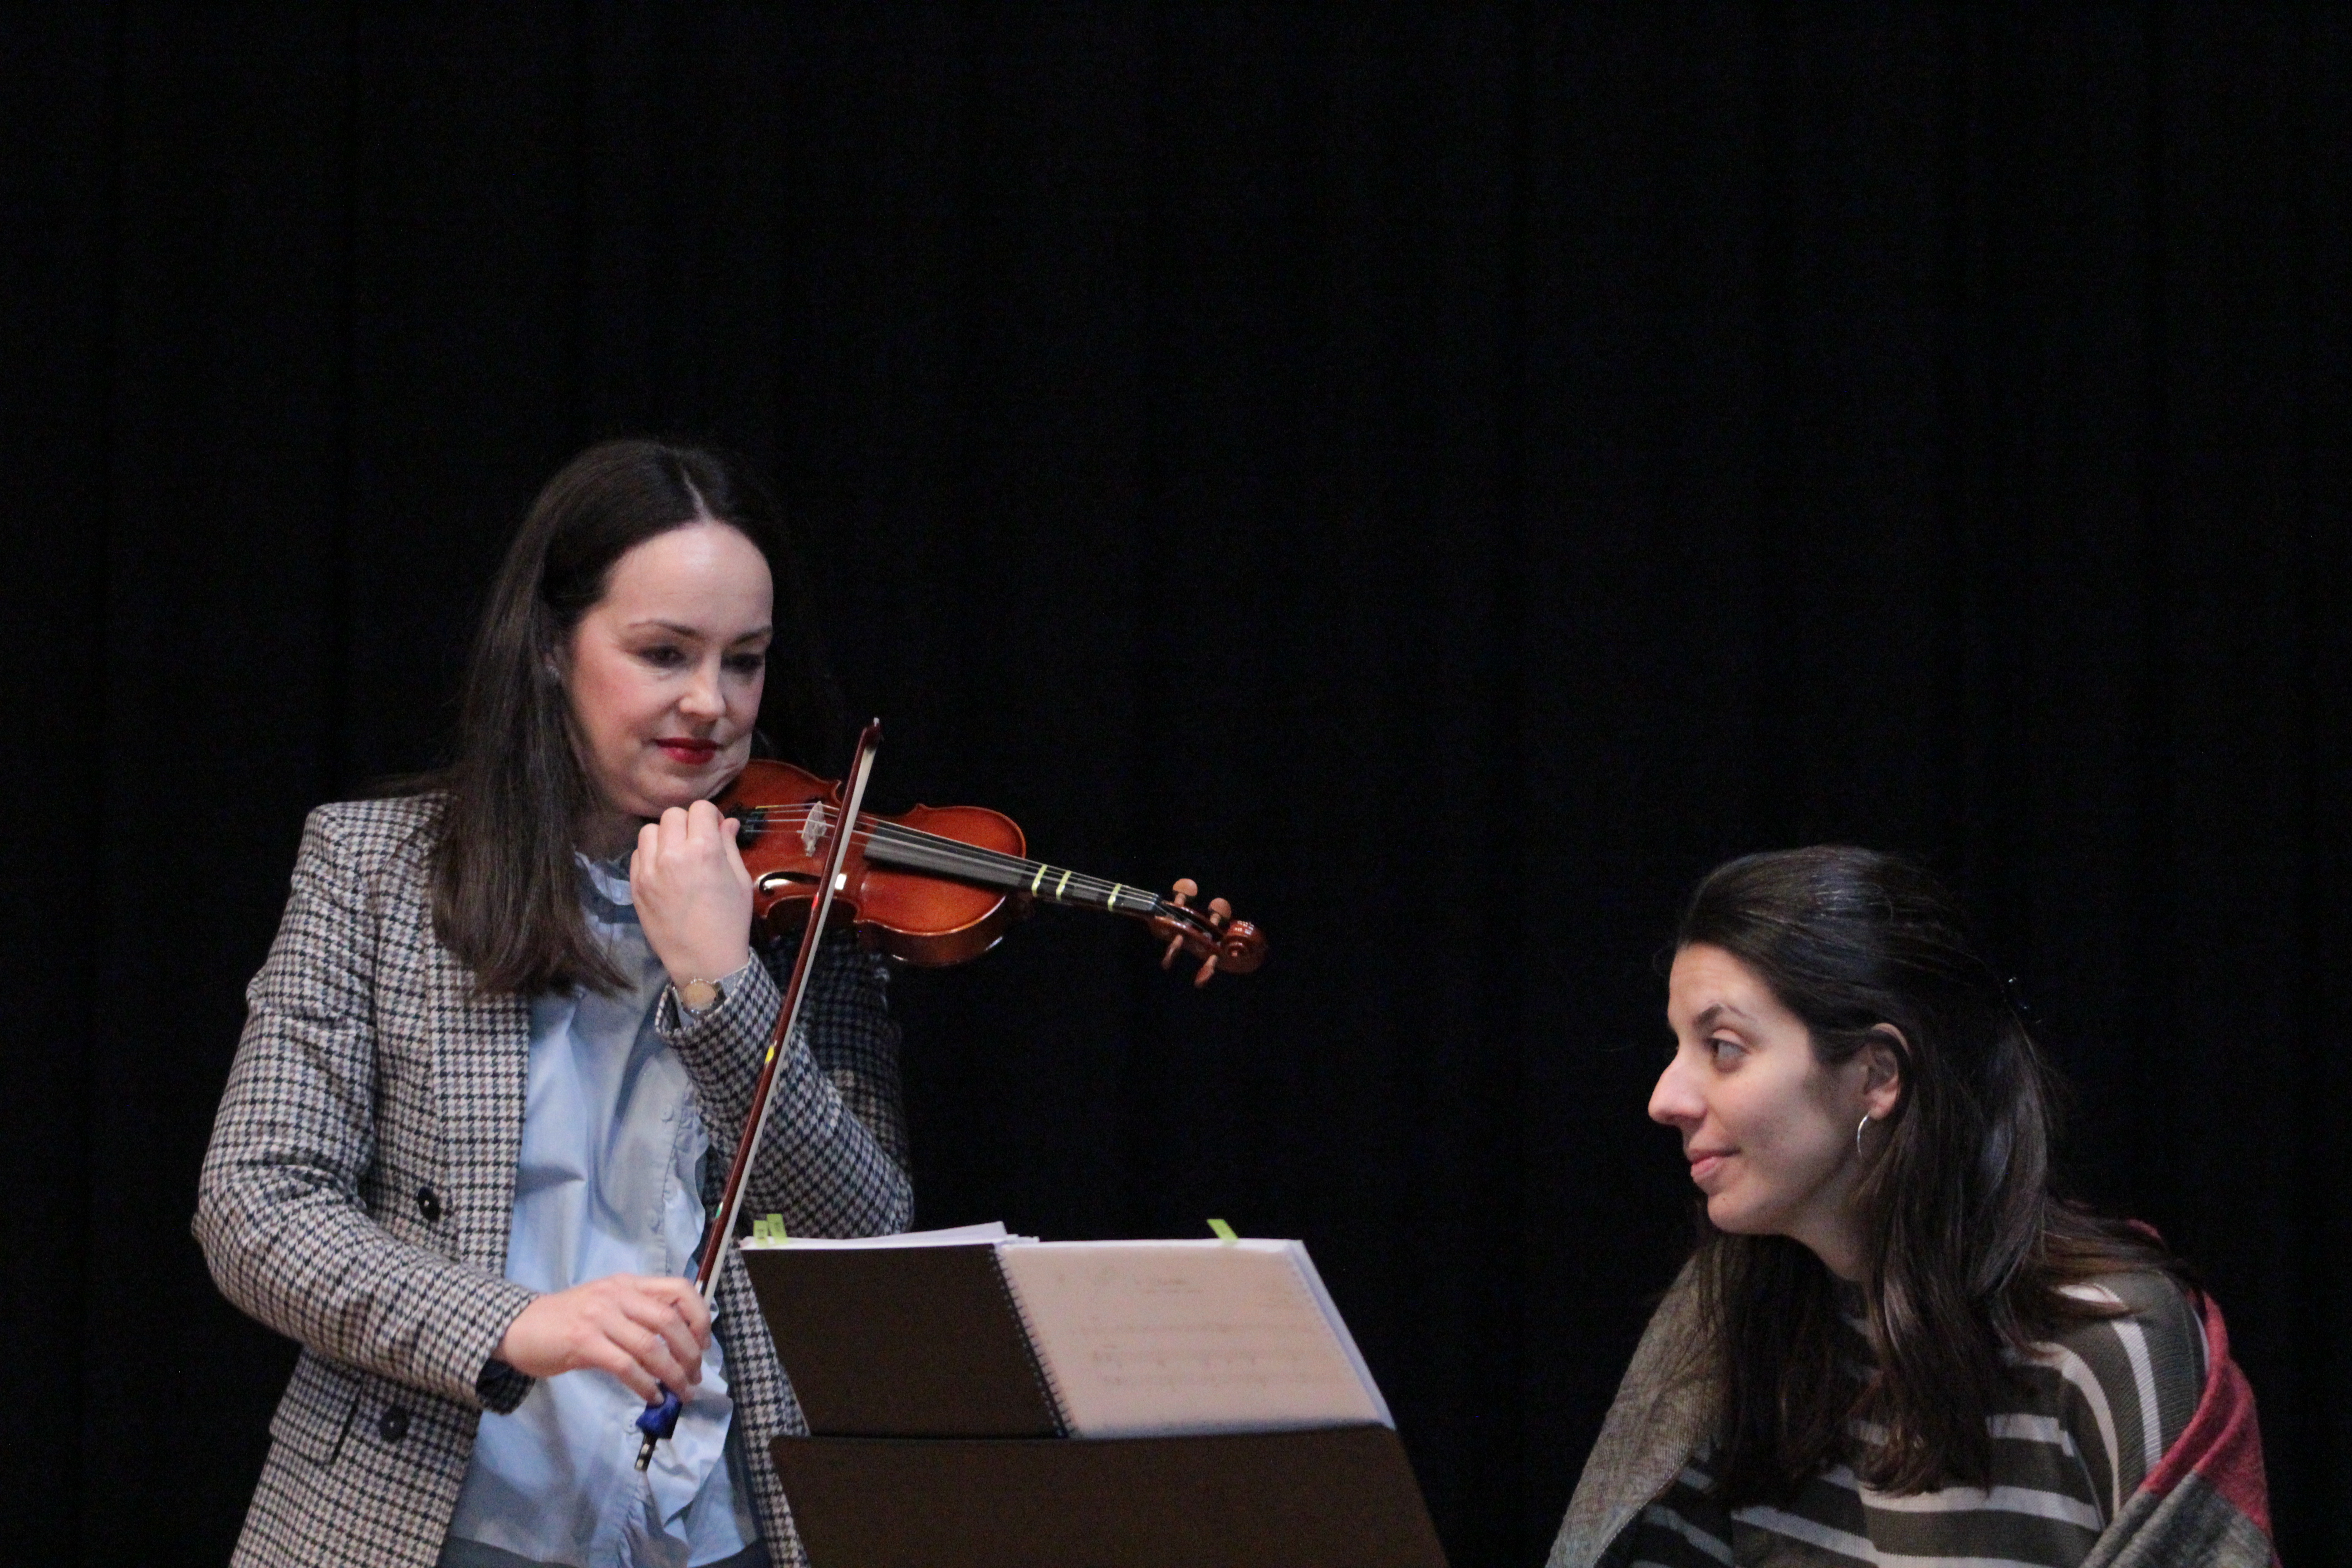  •	Pianista acompañante dando un la a la profesora de violín para afinar el instrumento de un alumno pequeño